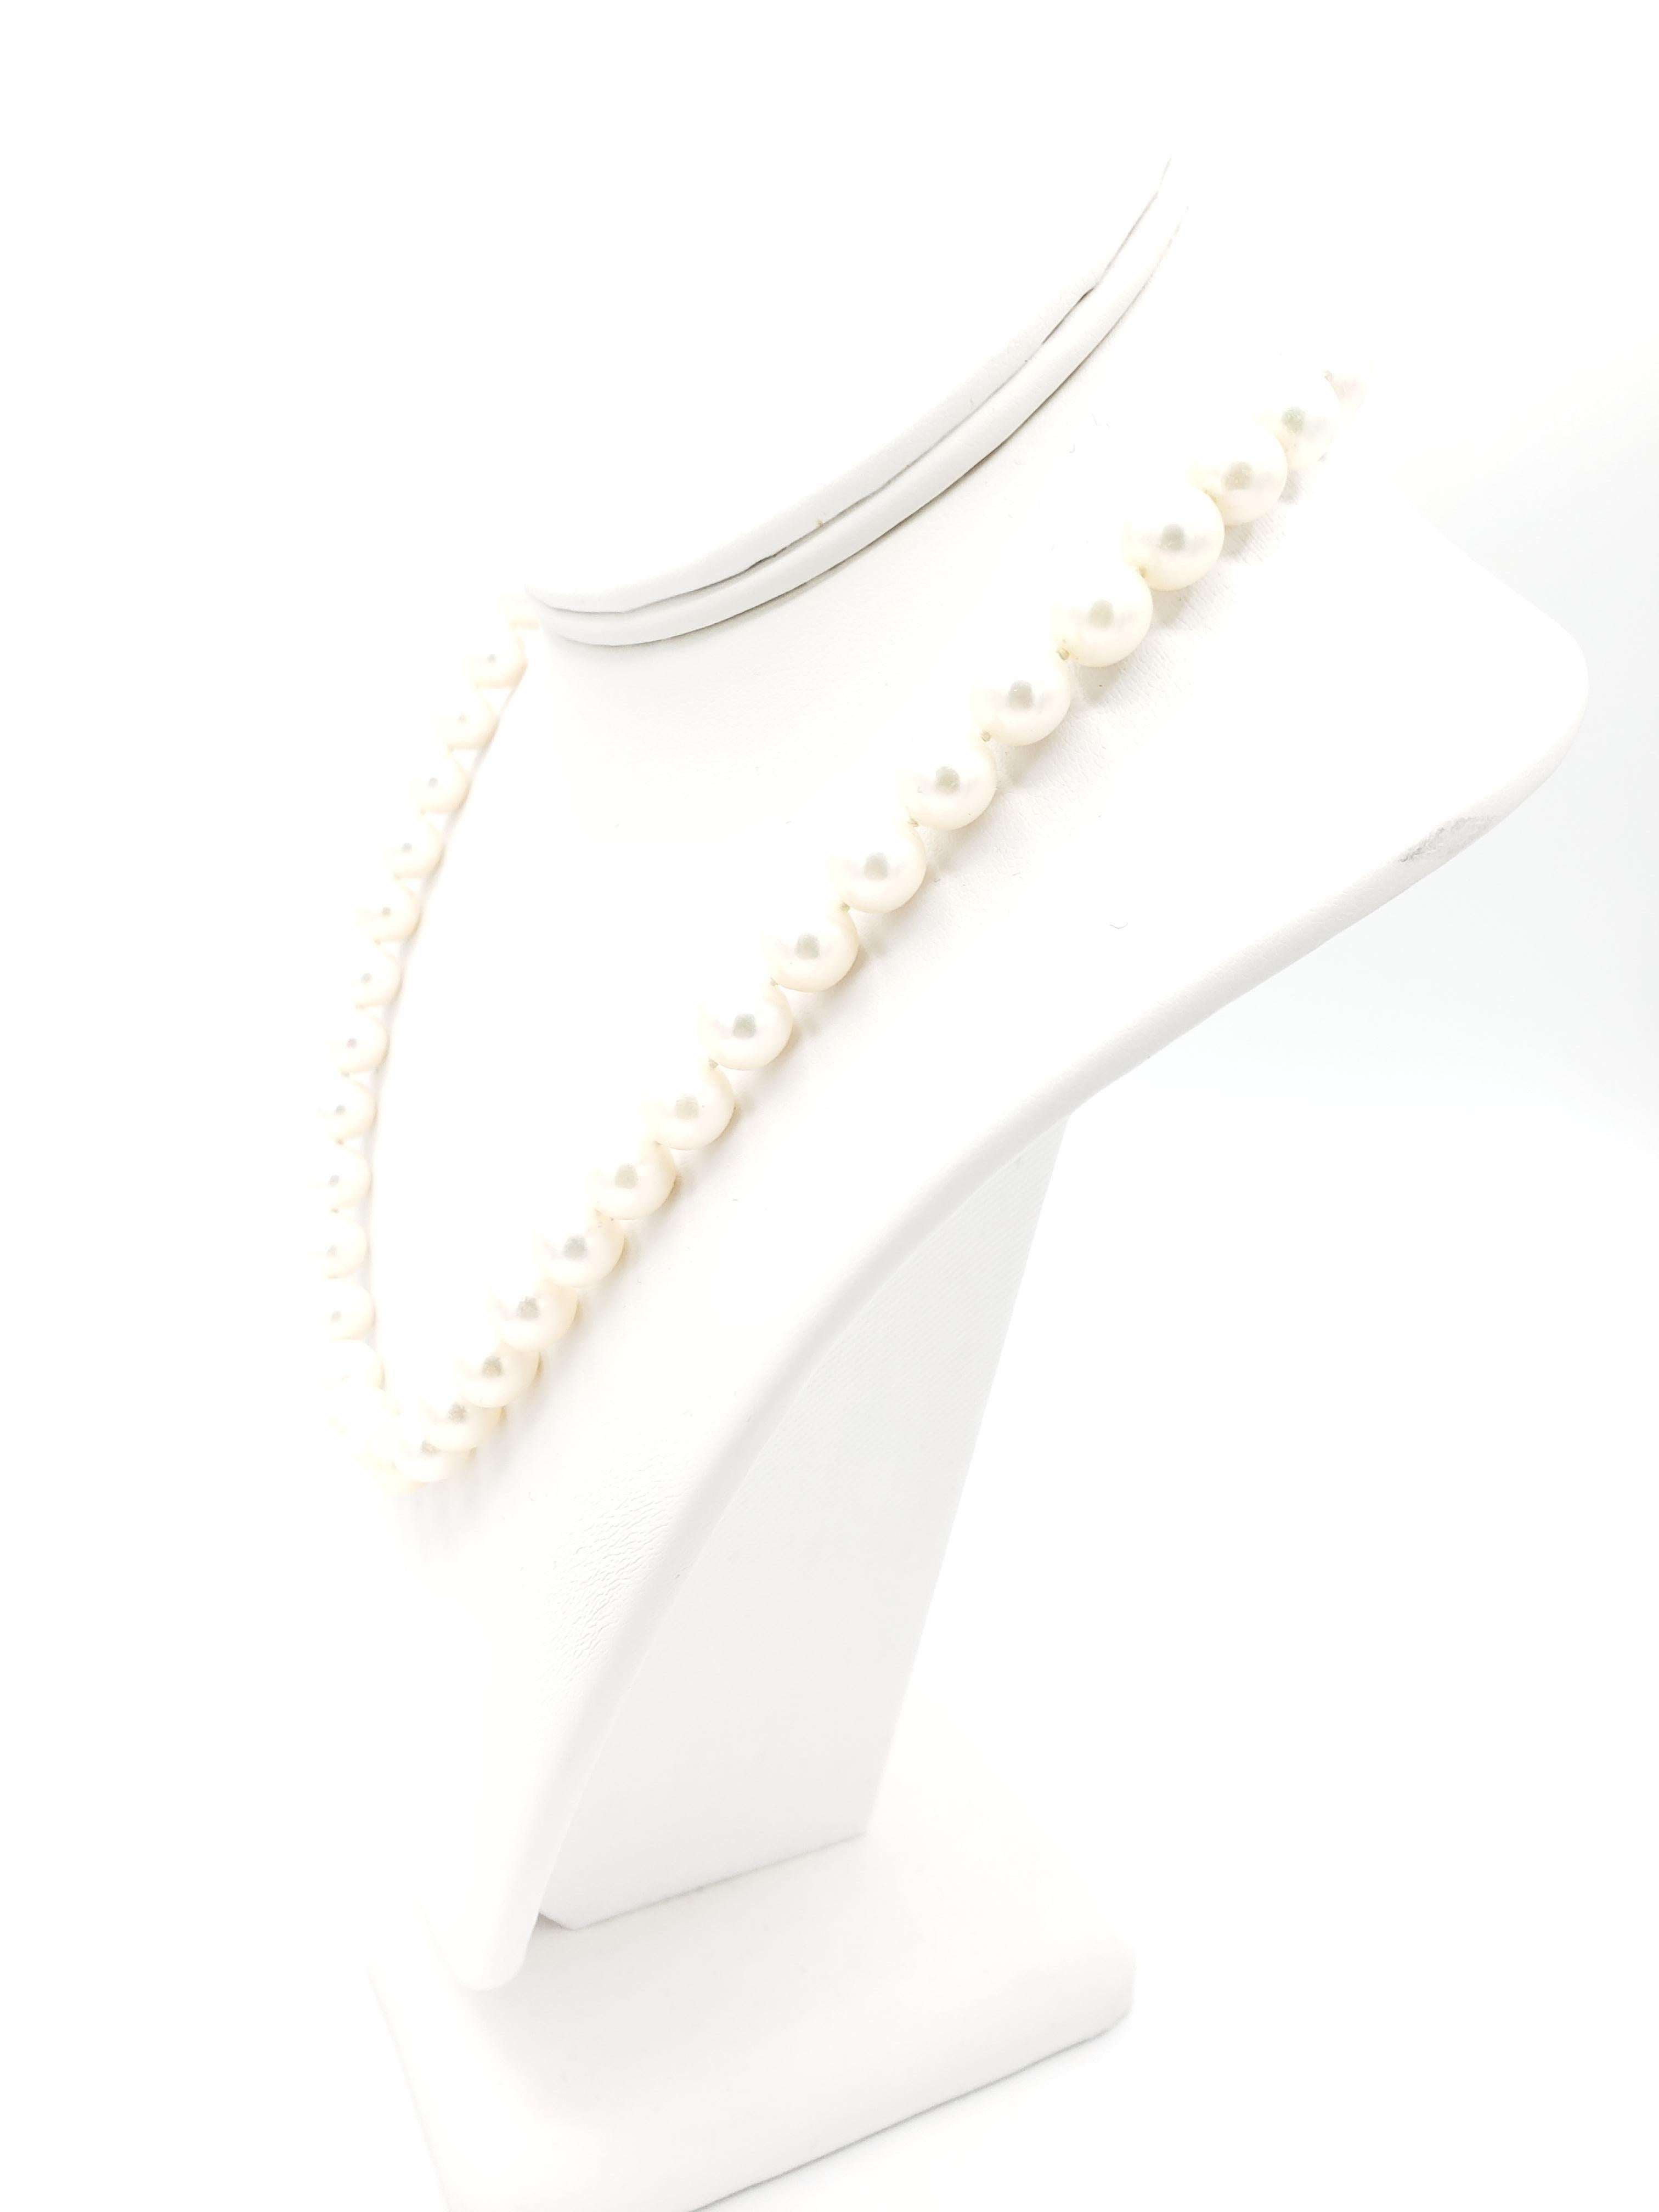 Diese atemberaubende neue Halskette besteht aus hochglänzenden japanischen Akoya-Salzwasserperlen der Qualität AAAA+ mit einer Größe von 8,5 mm. Die Halskette ist 17 1/2 Zoll lang und hat einen sicheren Verschluss. Die Perlen sind perfekt rund und